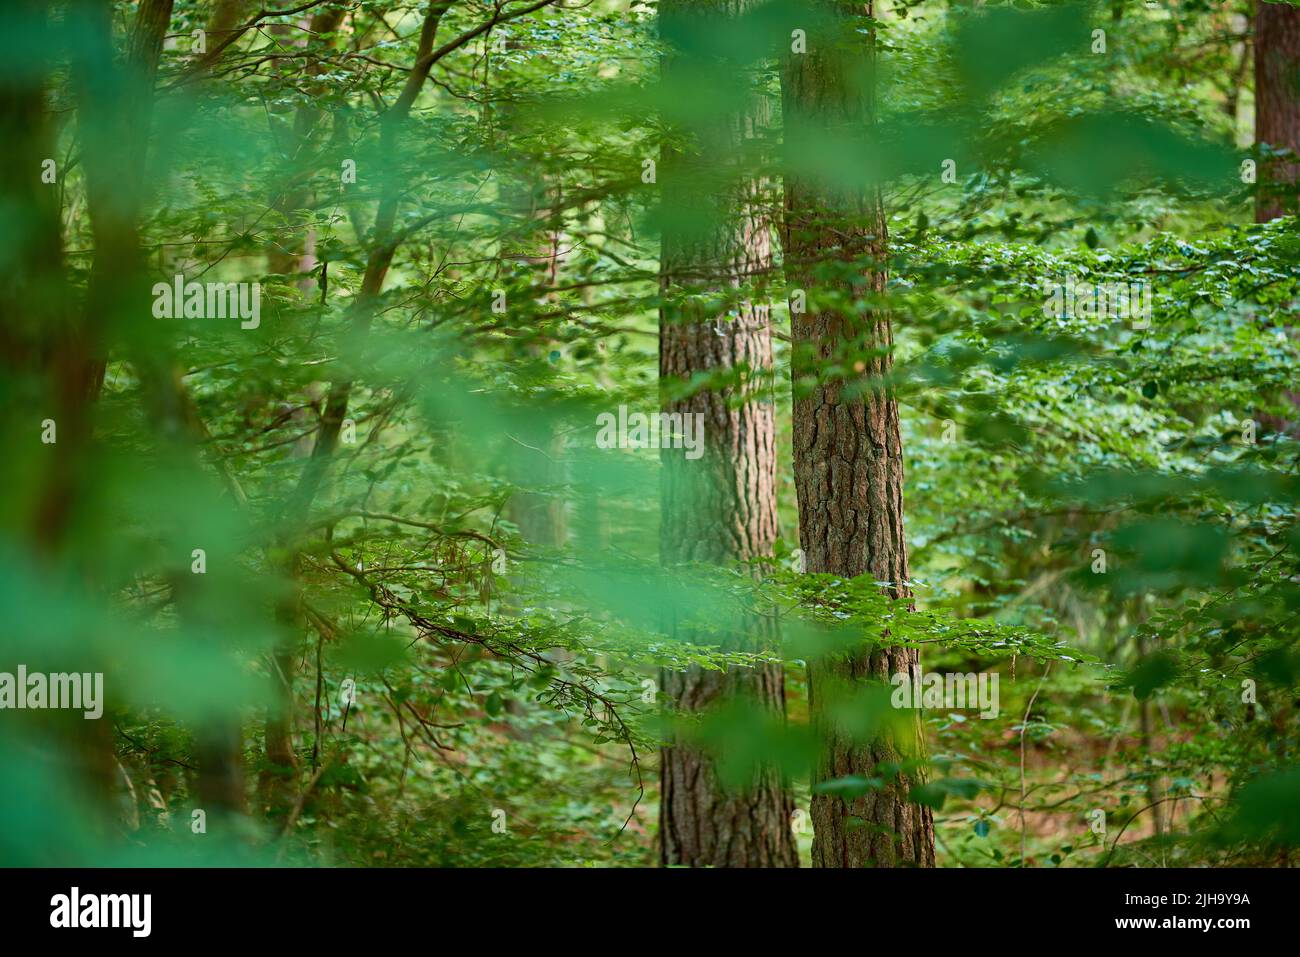 Paysage verdoyant et pittoresque avec arbres à feuilles caduques vert frais dans un environnement naturel isolé. Vue sur une forêt de conifères saturée avec des feuilles vibrantes Banque D'Images